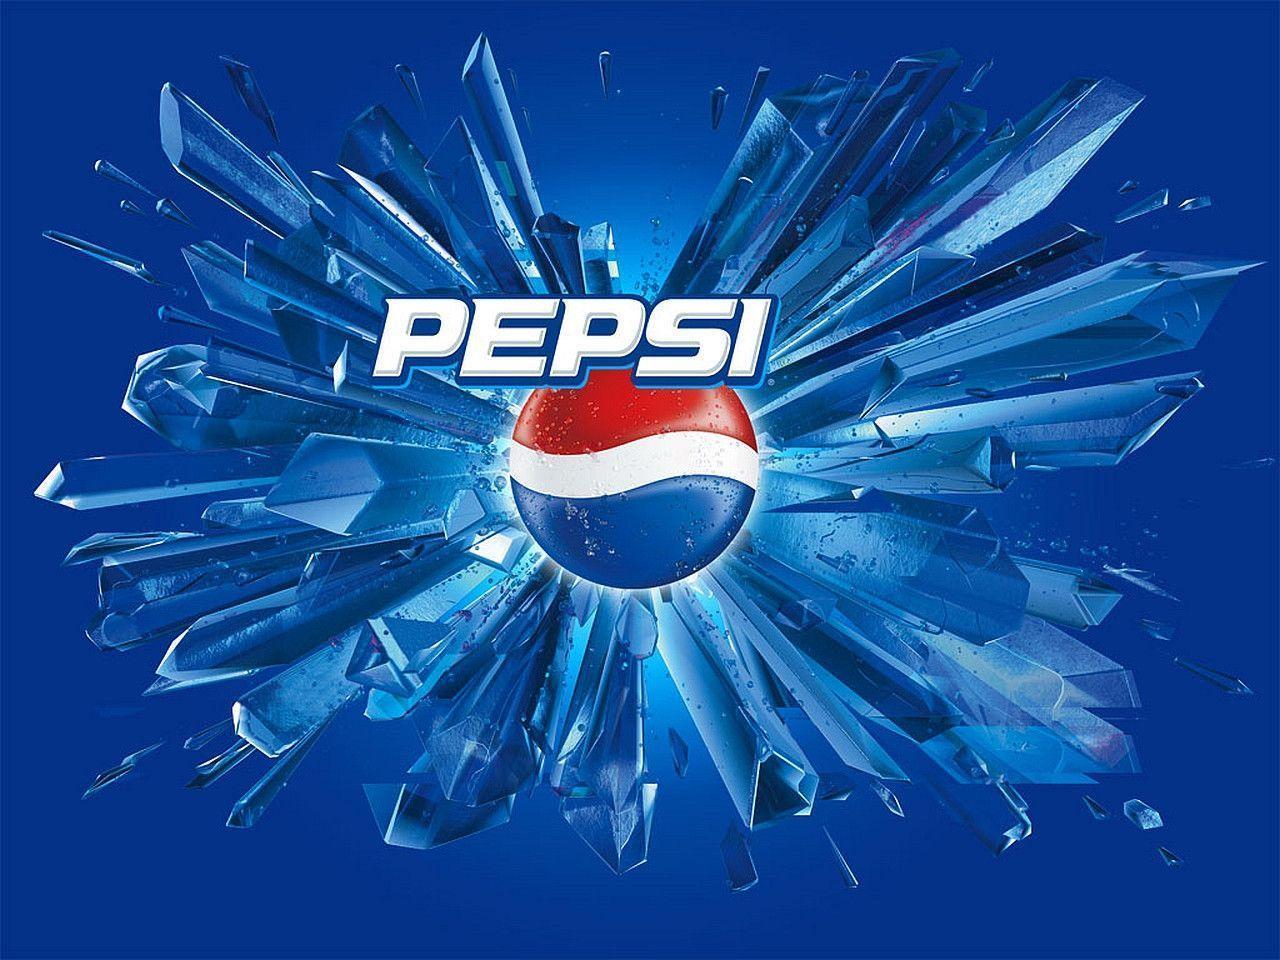 7 Pepsi Wallpapers